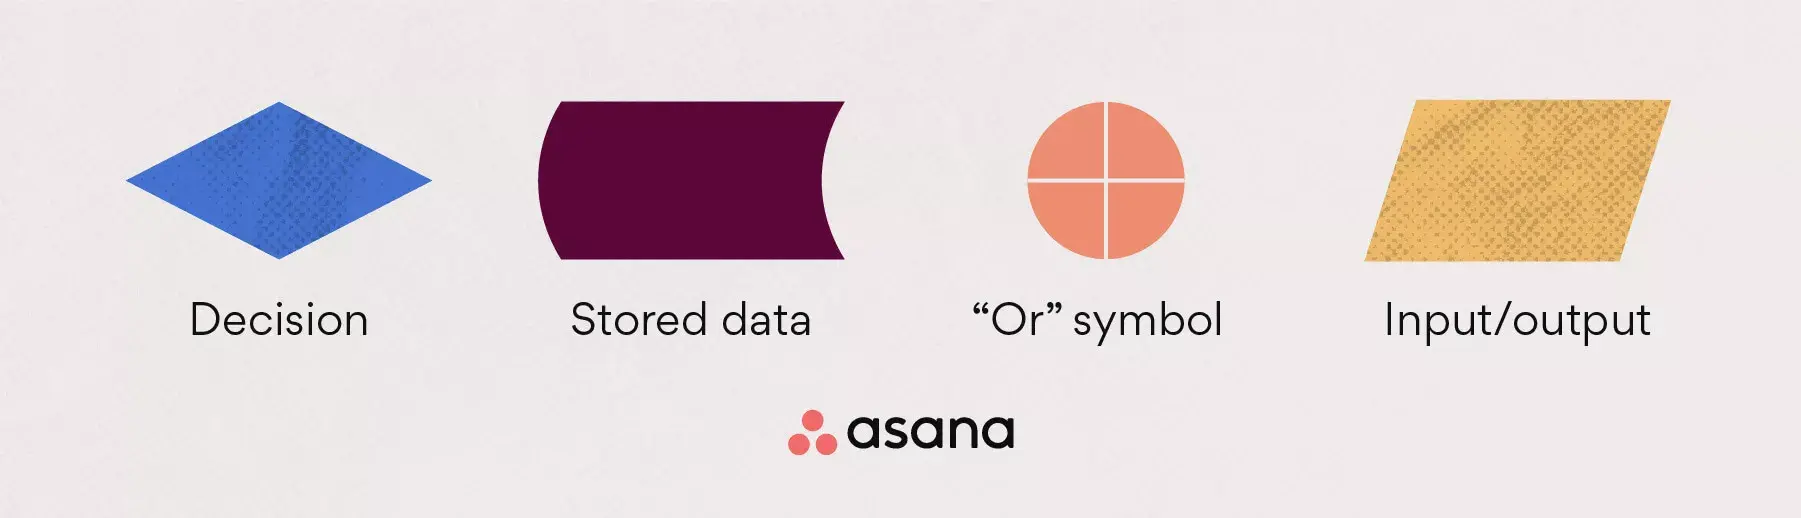 Stroomdiagramsymbolen: beslissing, opgeslagen gegevens, of symbool + input/output